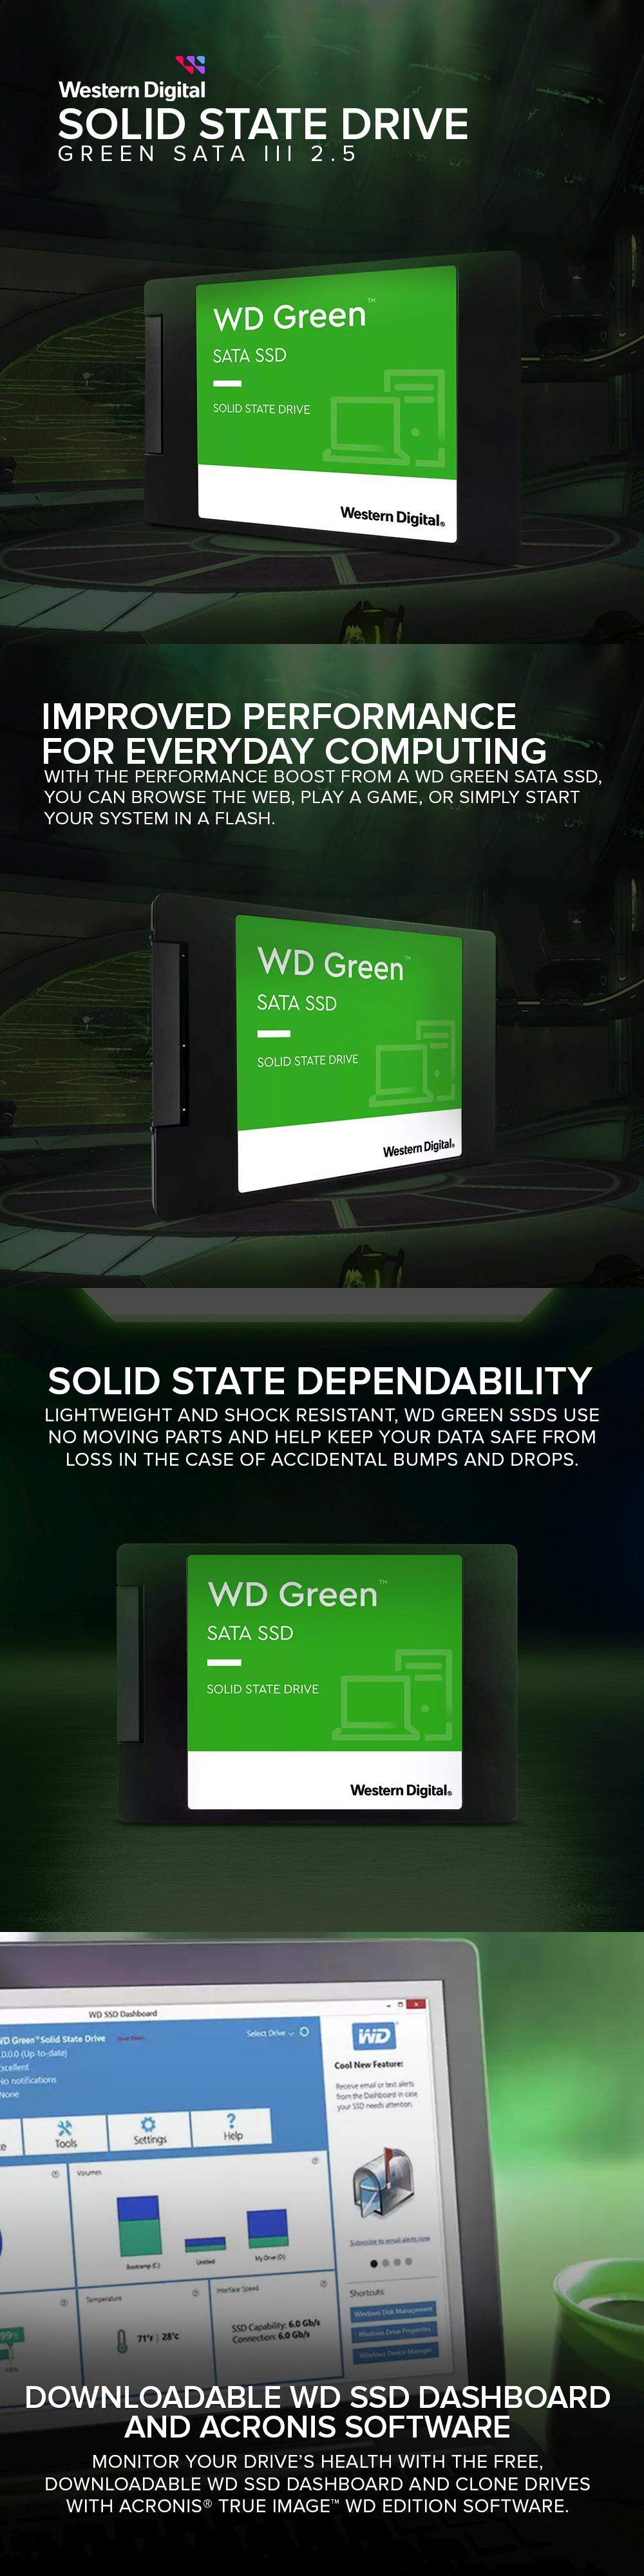 WD Green SSD Sata 2.5 - 1TB/480GB/240GB